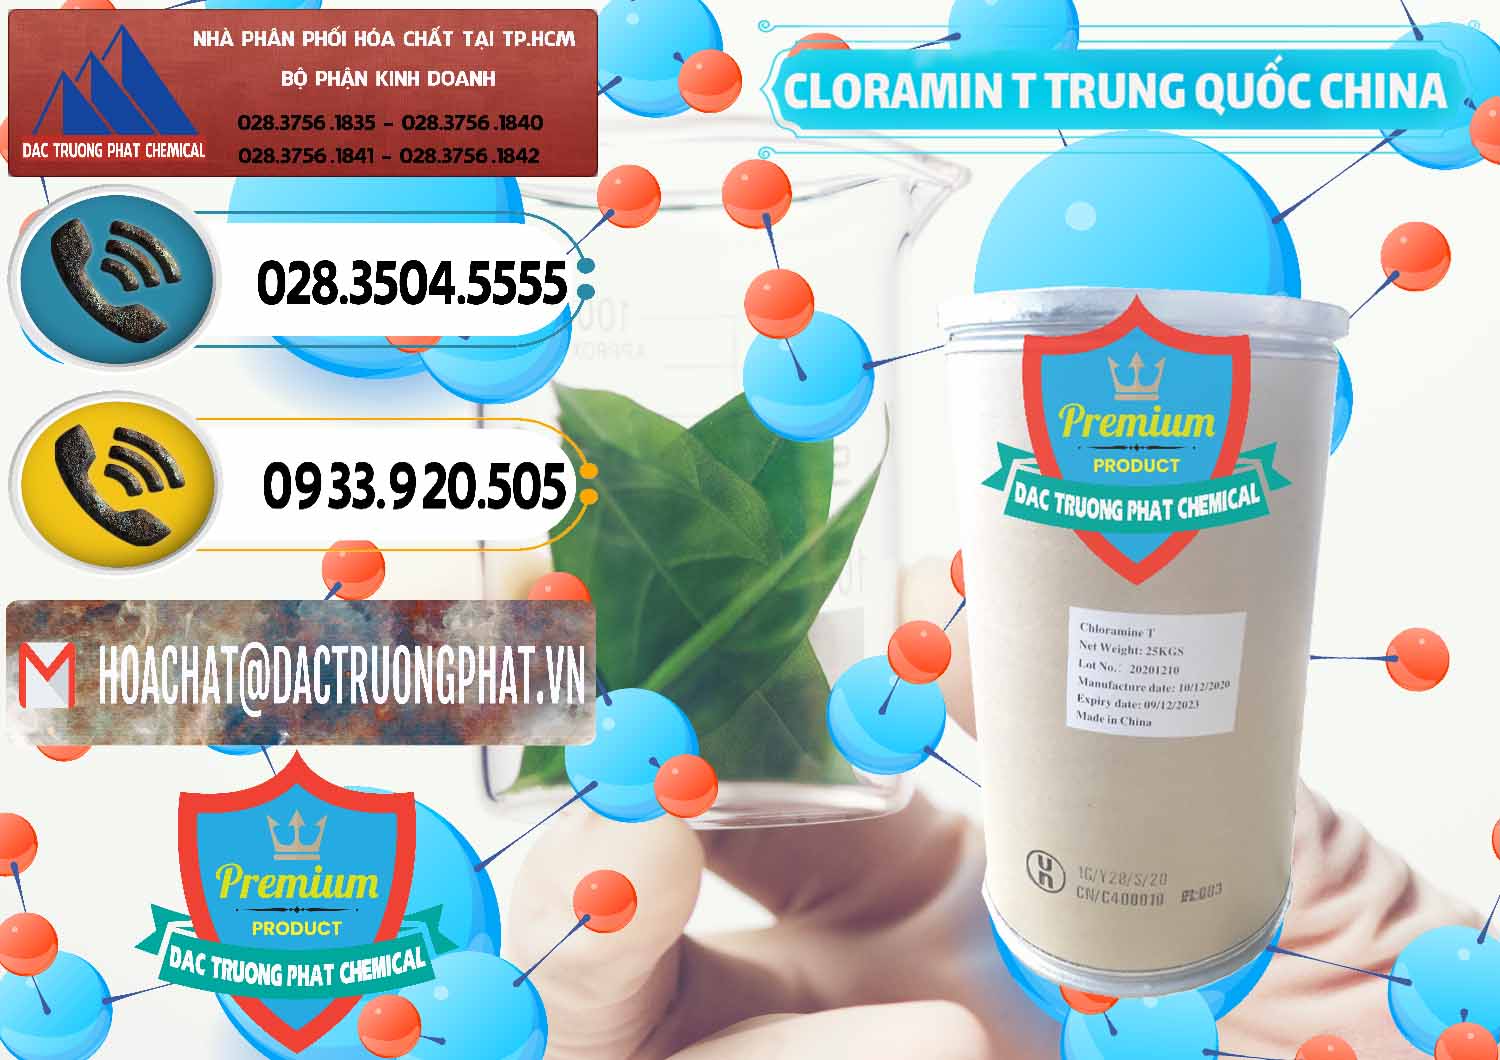 Chuyên kinh doanh và bán Cloramin T Khử Trùng, Diệt Khuẩn Trung Quốc China - 0301 - Cty phân phối và cung ứng hóa chất tại TP.HCM - hoachatdetnhuom.vn